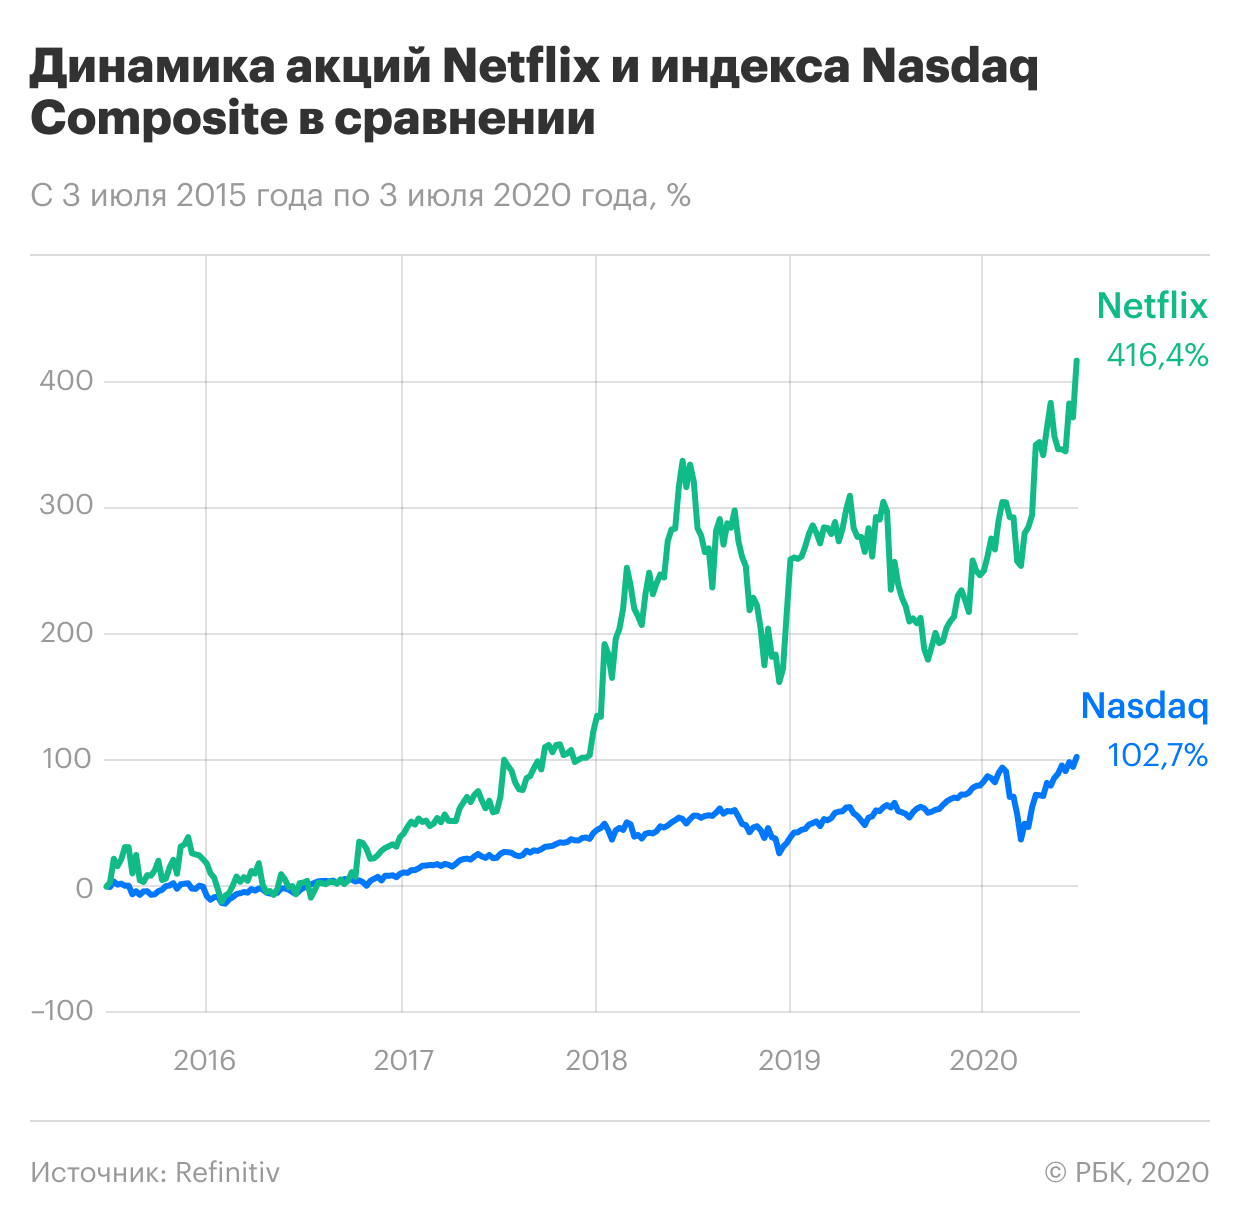 Акции компании Нетфликс динамика. Netflix акции. Акции Нетфликс график. Рост акций.